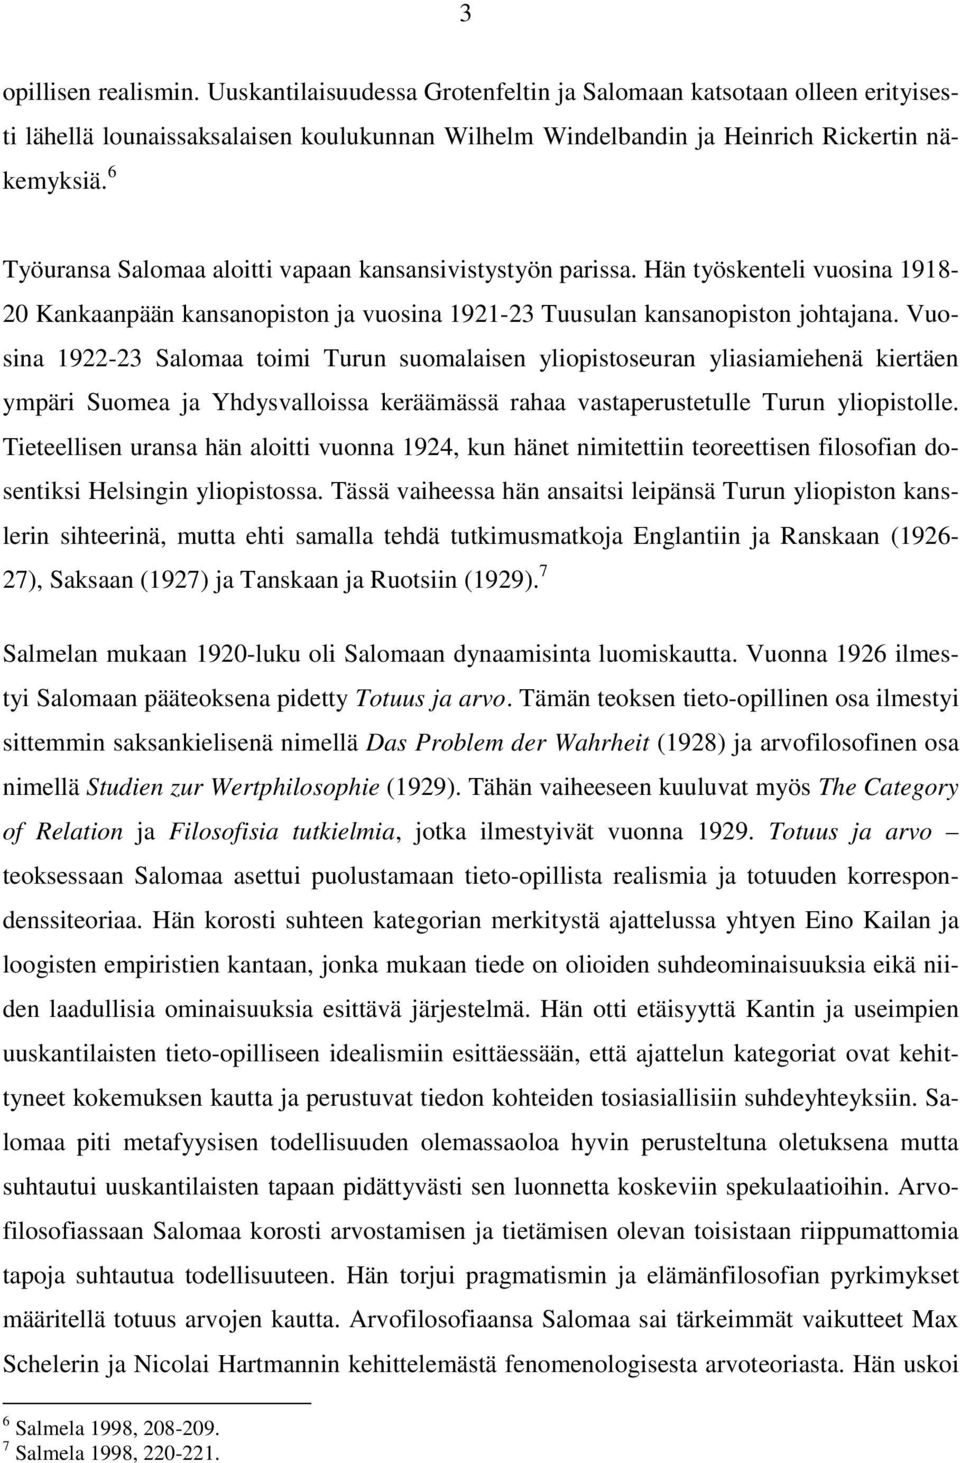 Vuosina 1922-23 Salomaa toimi Turun suomalaisen yliopistoseuran yliasiamiehenä kiertäen ympäri Suomea ja Yhdysvalloissa keräämässä rahaa vastaperustetulle Turun yliopistolle.